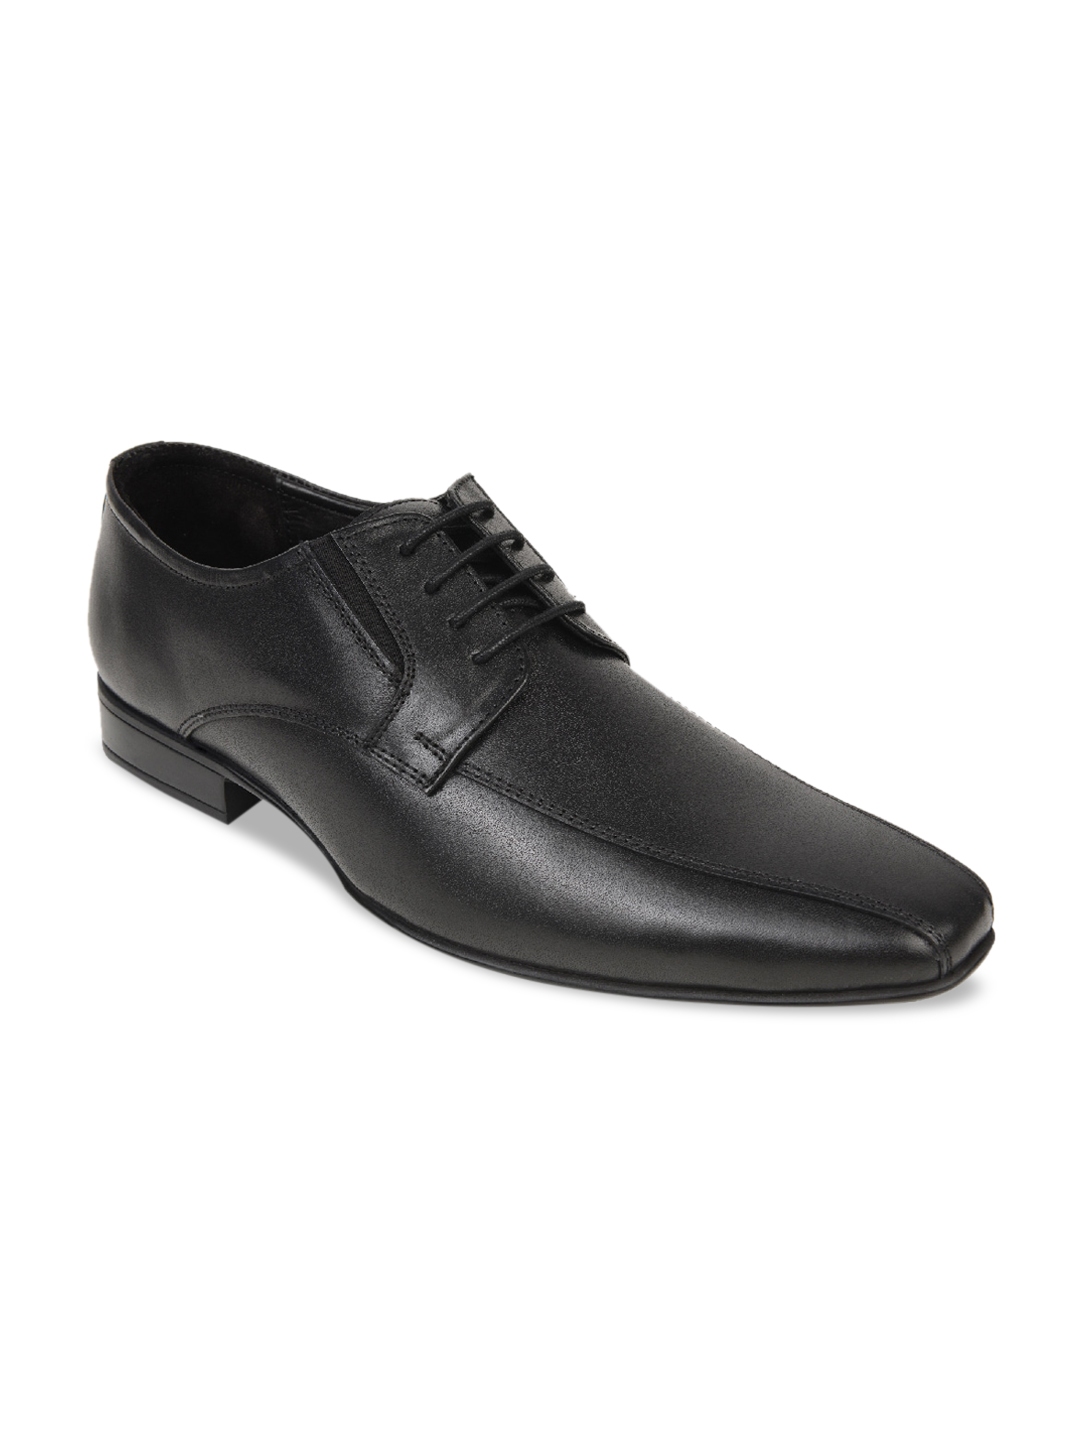 Buy Regal Men Black Solid Leather Formal Derbys - Formal Shoes for Men ...